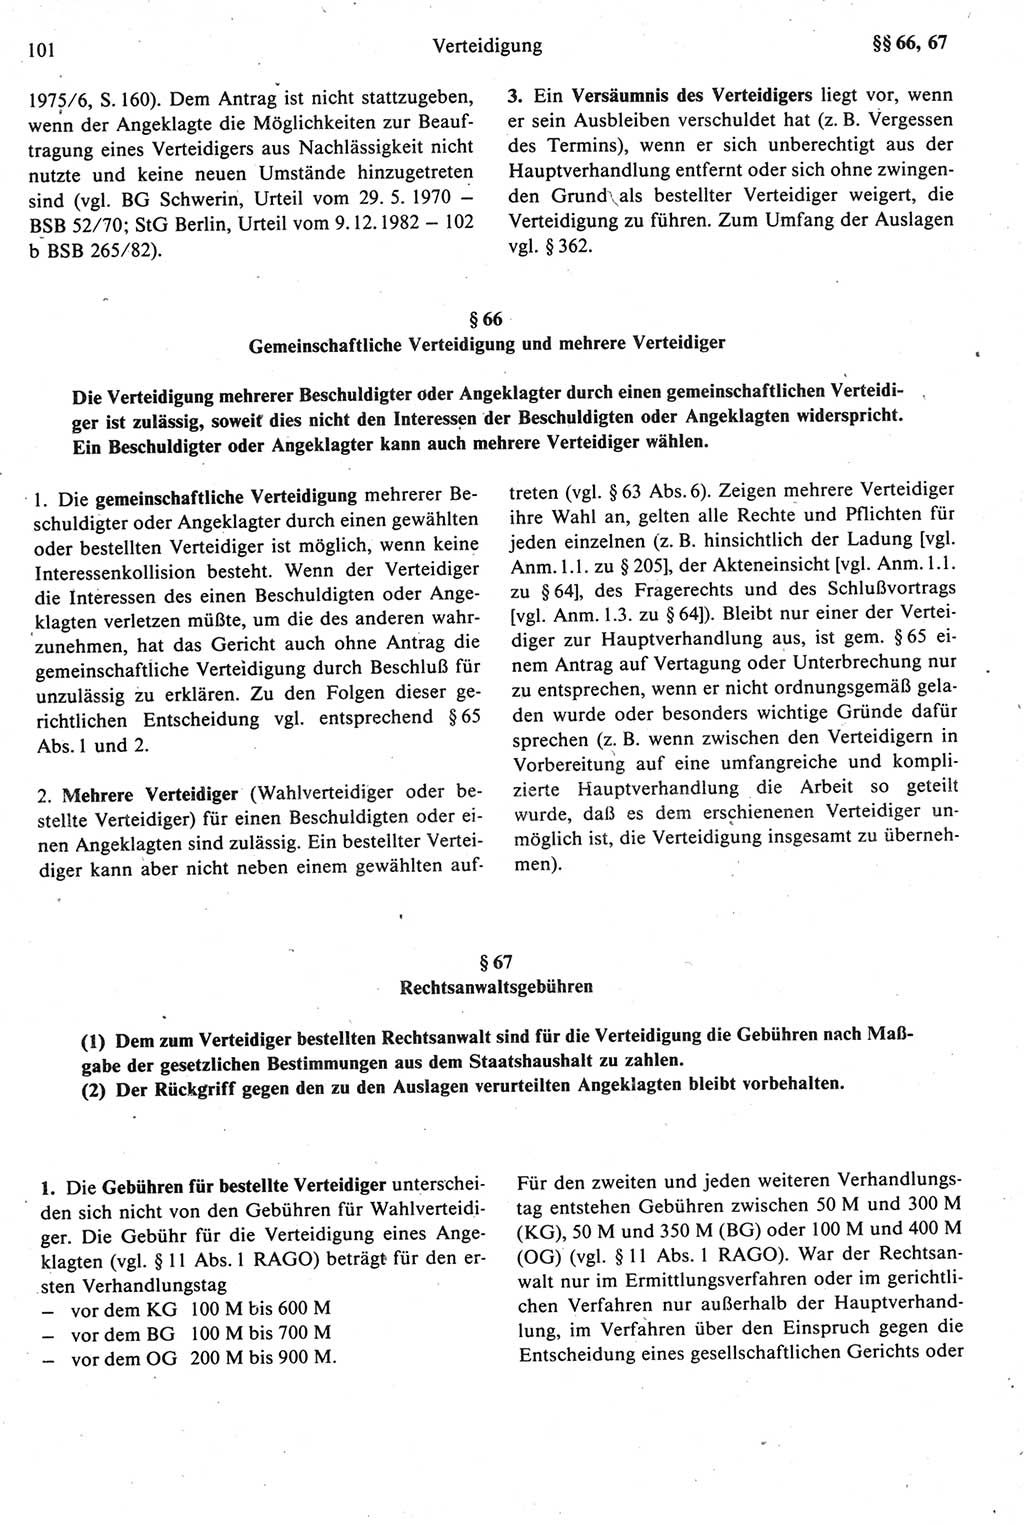 Strafprozeßrecht der DDR [Deutsche Demokratische Republik], Kommentar zur Strafprozeßordnung (StPO) 1987, Seite 101 (Strafprozeßr. DDR Komm. StPO 1987, S. 101)